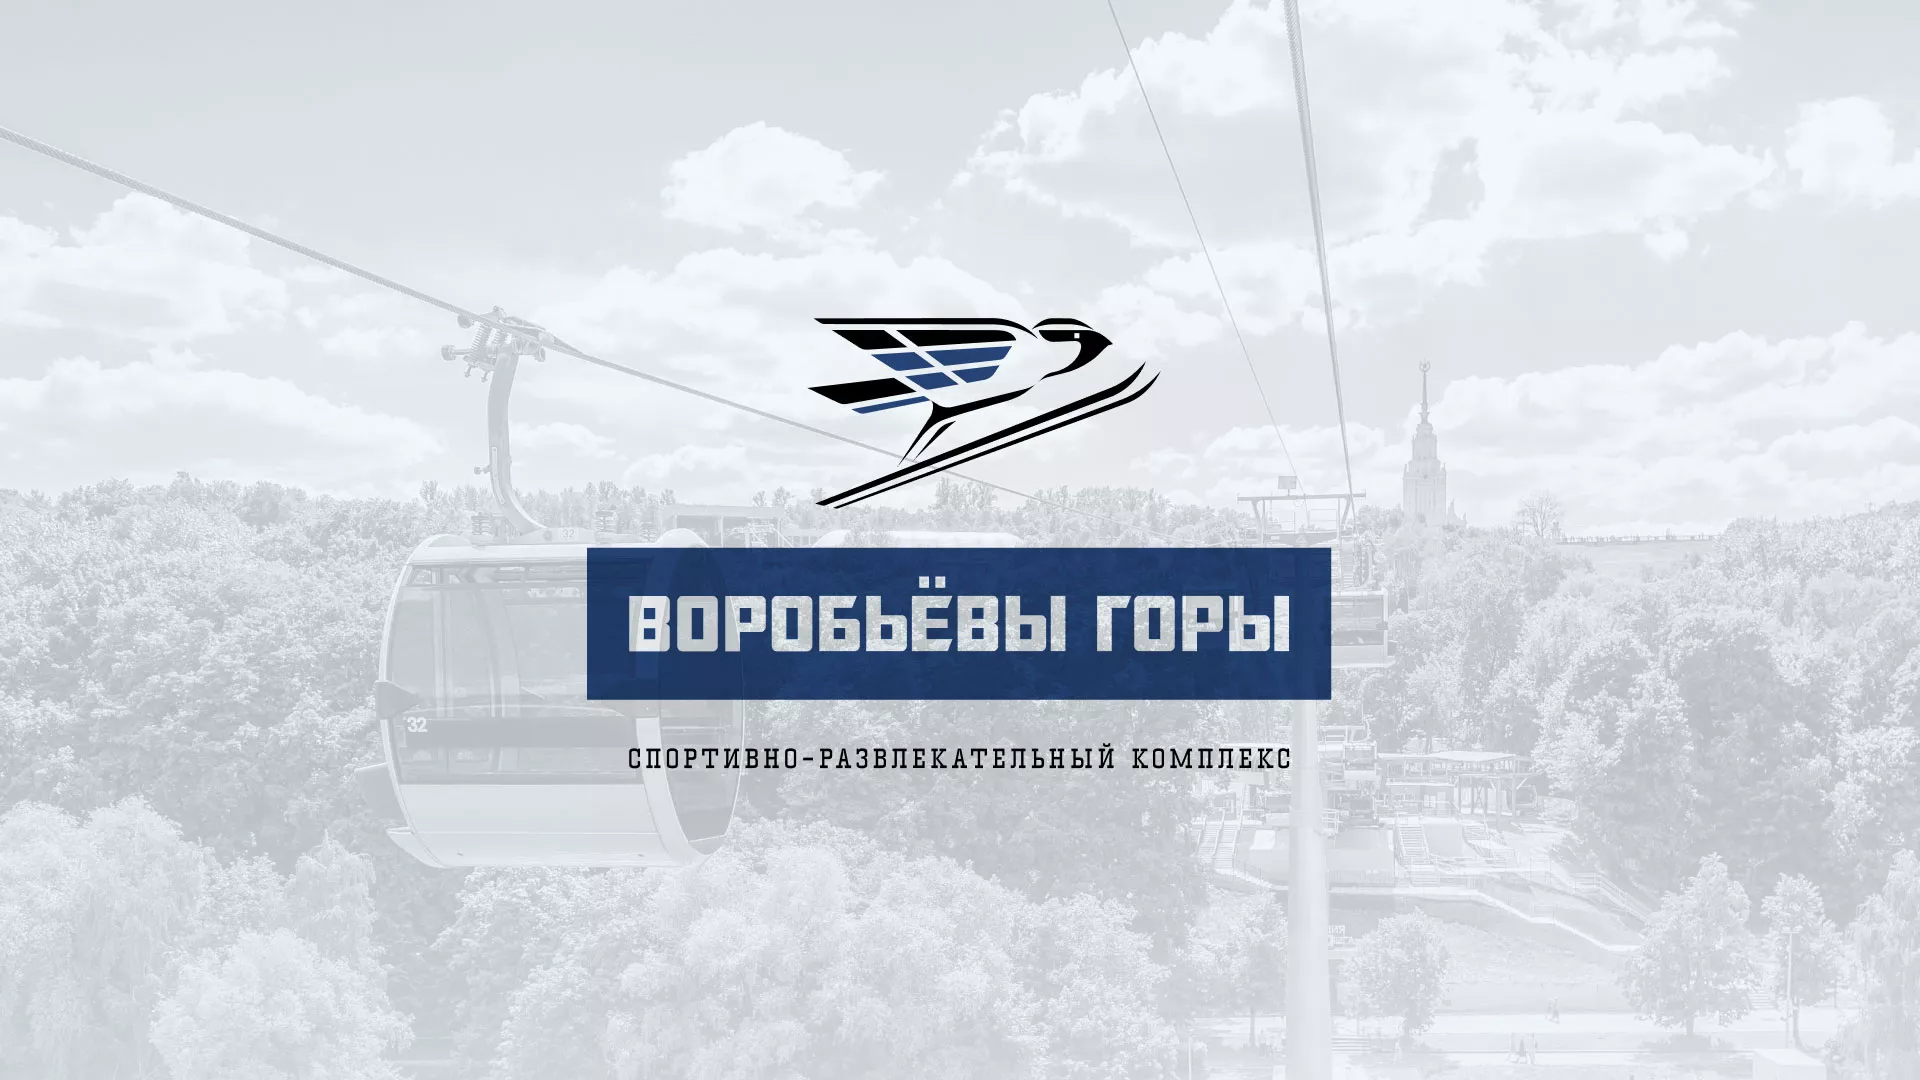 Разработка сайта в Чистополе для спортивно-развлекательного комплекса «Воробьёвы горы»